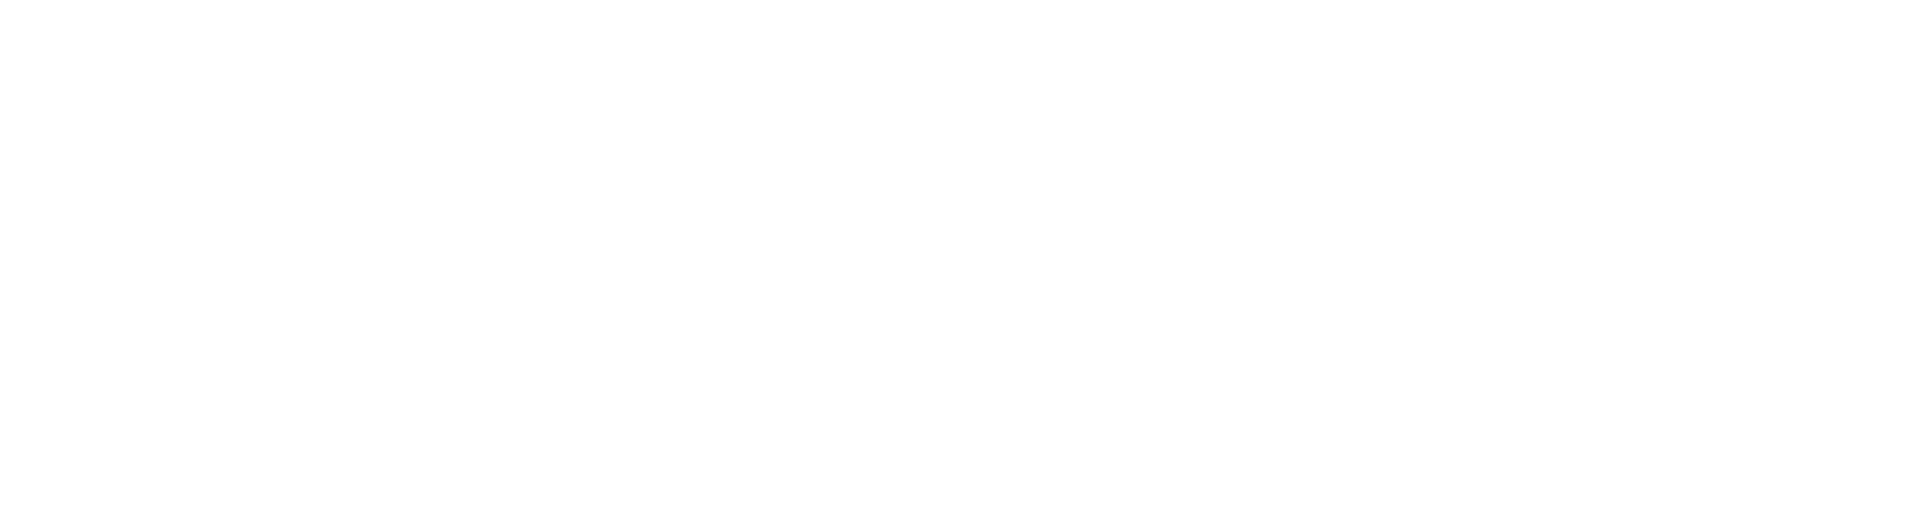 Chris Ostrowski Store